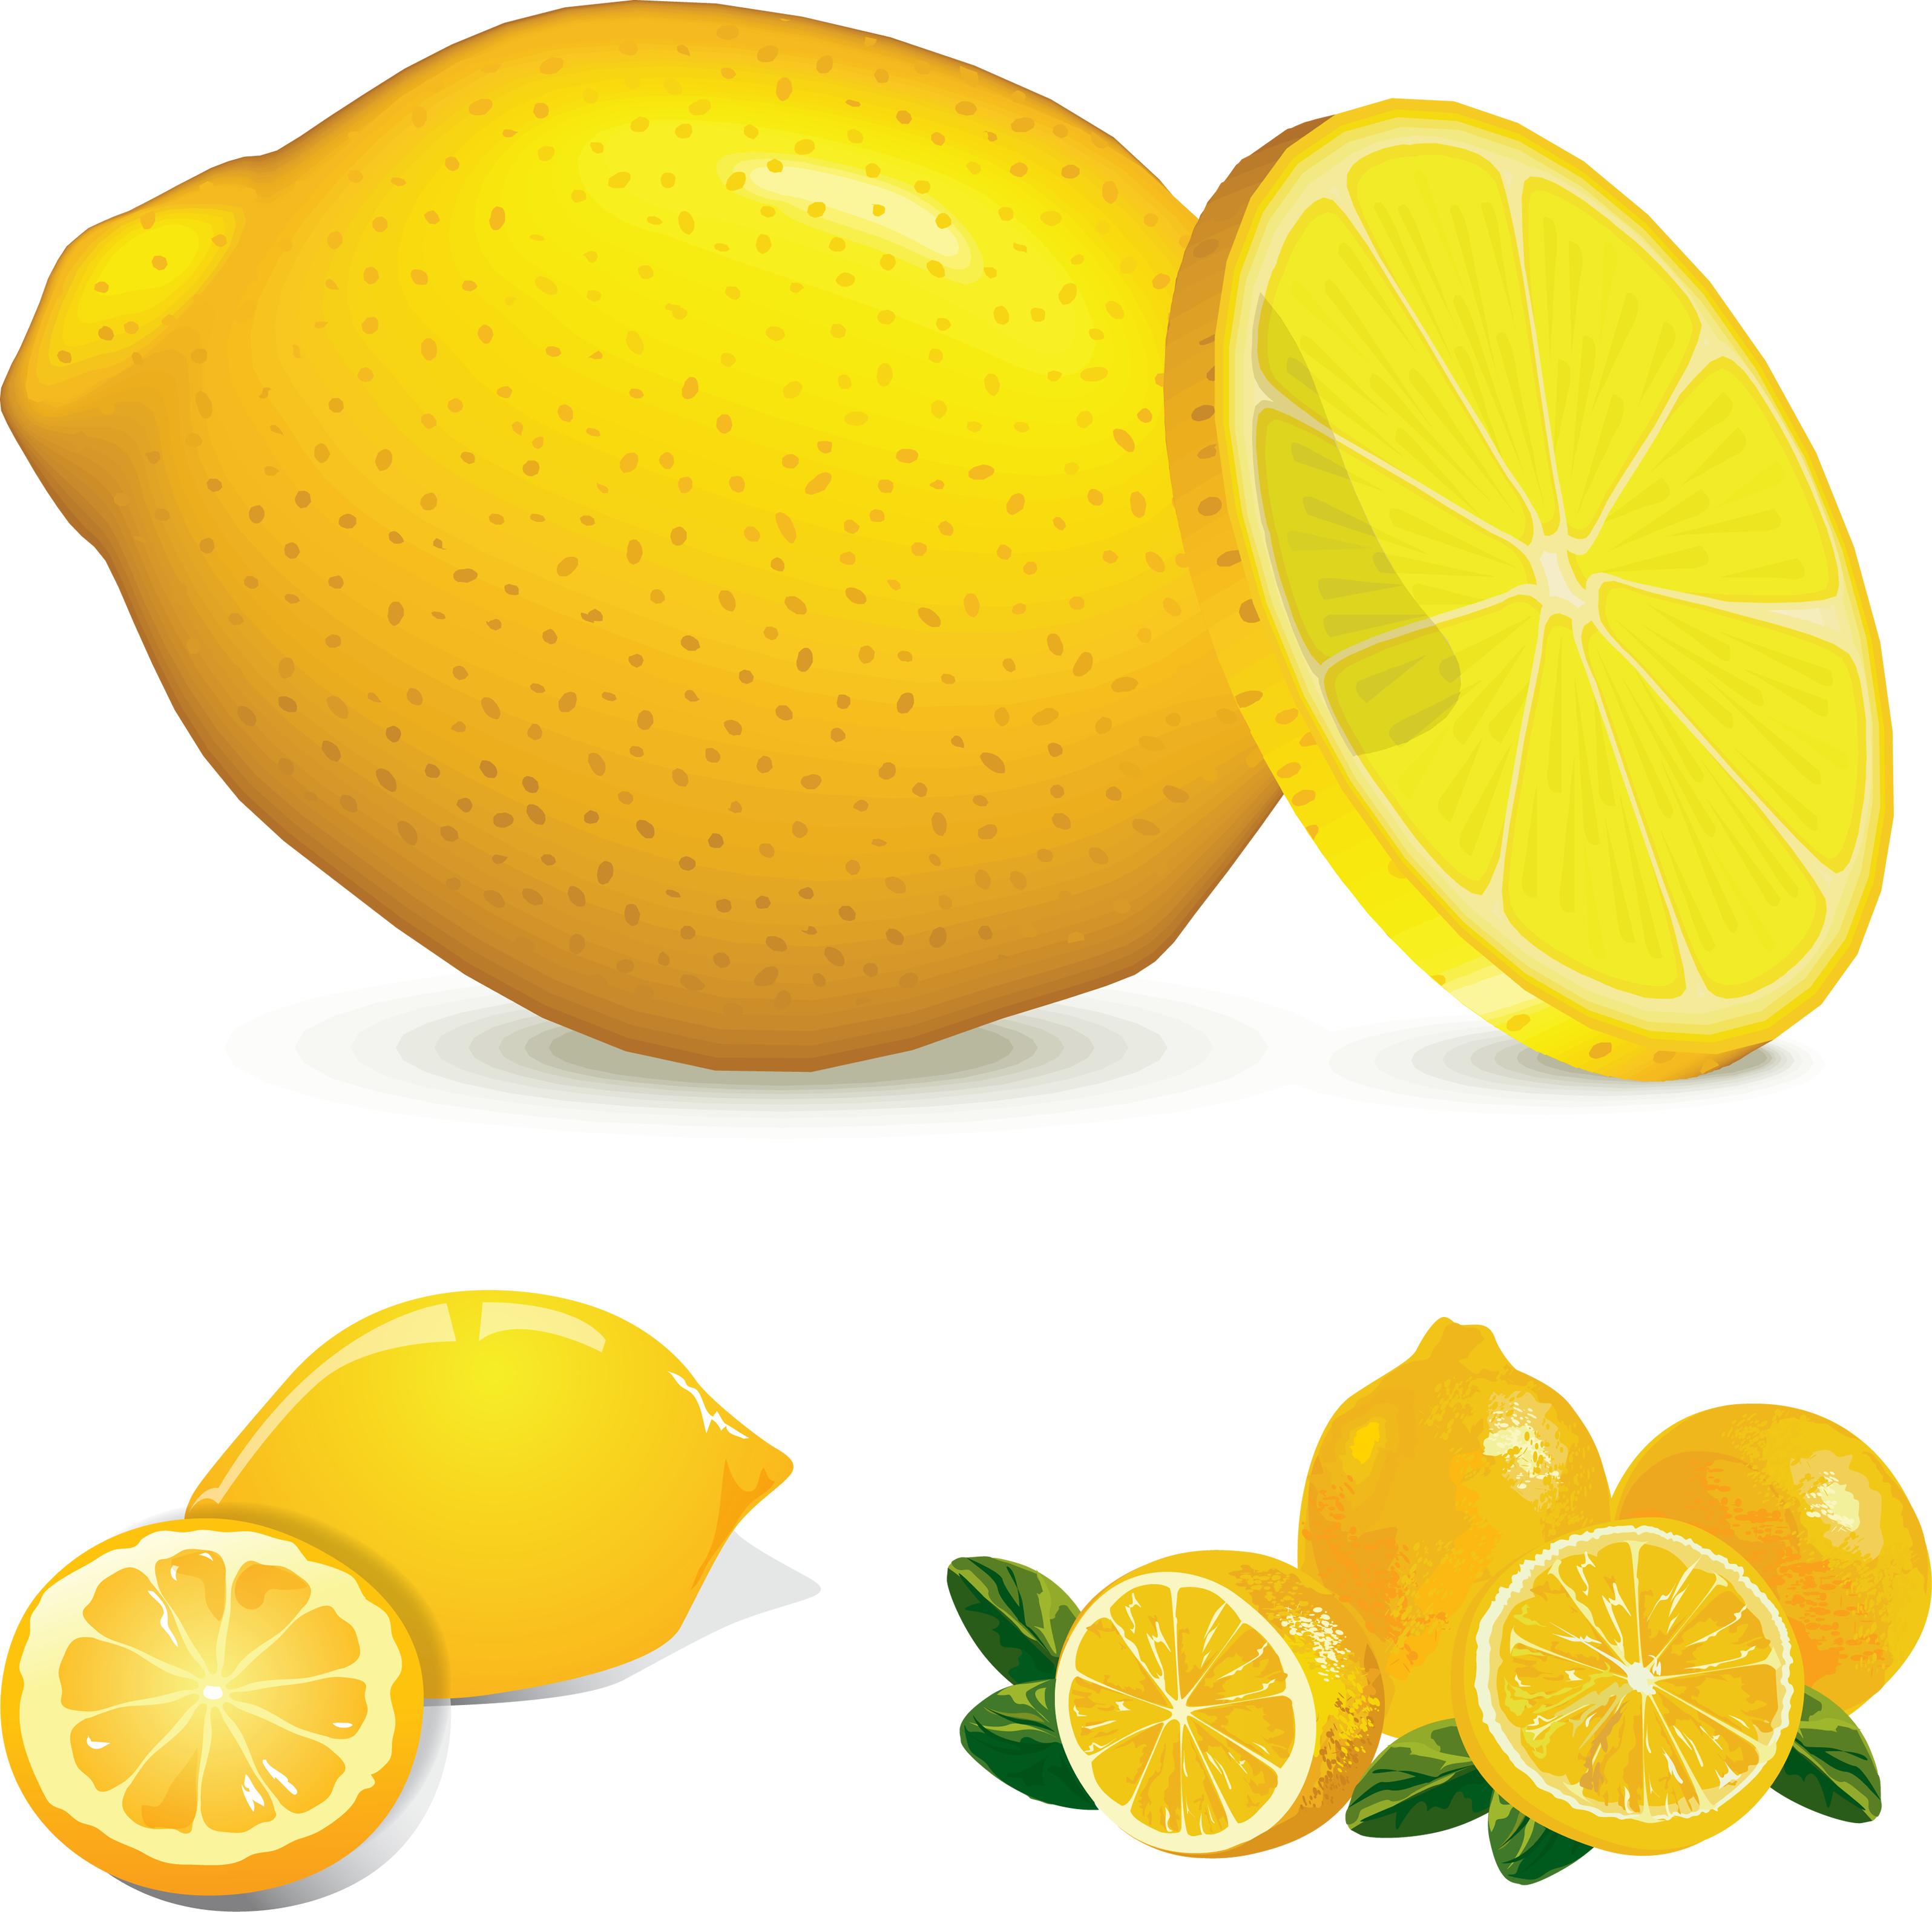 Lemon images free fruit pictures cliparts